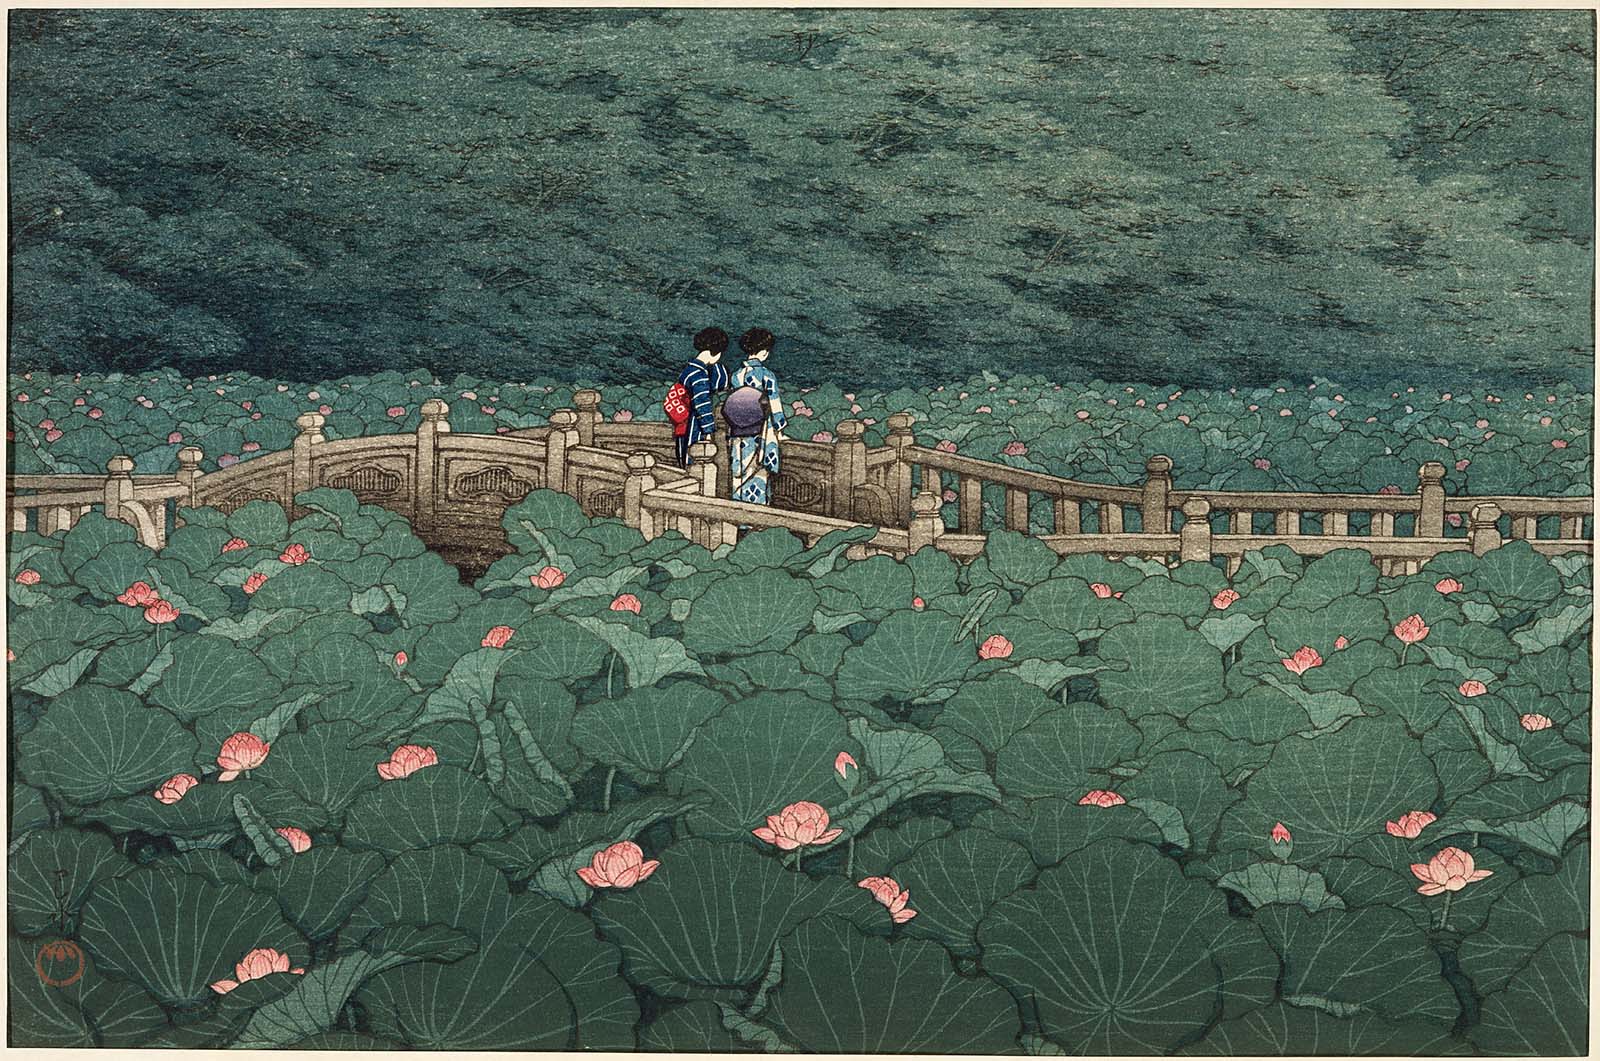 البركة عند ضريح بينتين في شيبا by Hasui Kawase - 1929 م - 27.3 x 39.8 سم 